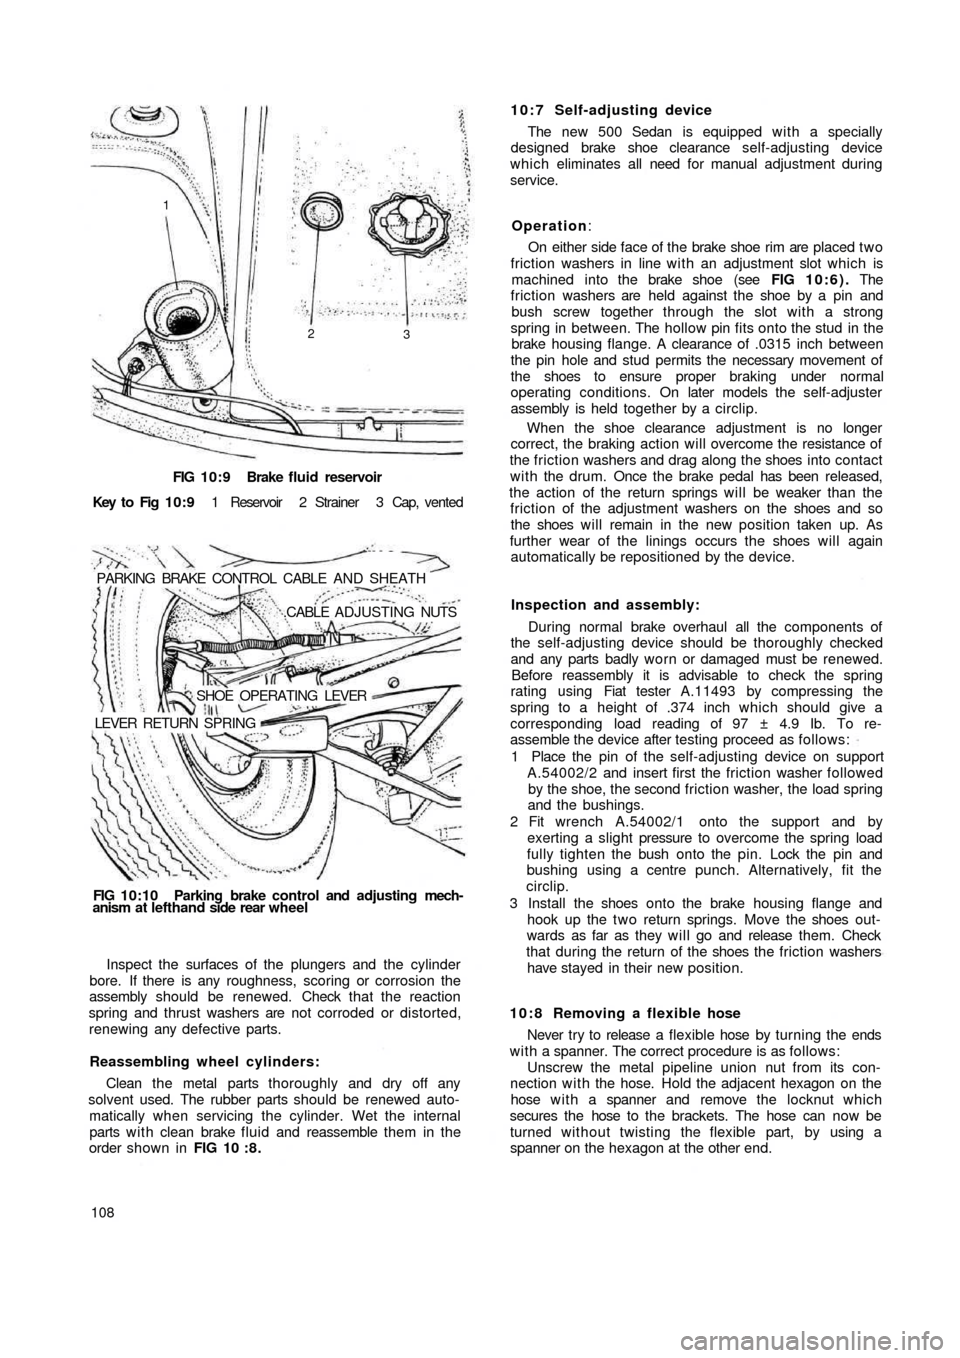 FIAT 500 1960 1.G Workshop Manual FIG 10:9 Brake  fluid reservoir
Key  to  Fig  1 0 : 9 1  Reservoir  2  Strainer  3  Cap,  vented
PARKING  BRAKE  CONTROL  CABLE  AND  SHEATH
.CABLE  ADJUSTING NUTS
SHOE  OPERATING  LEVER
LEVER  RETURN